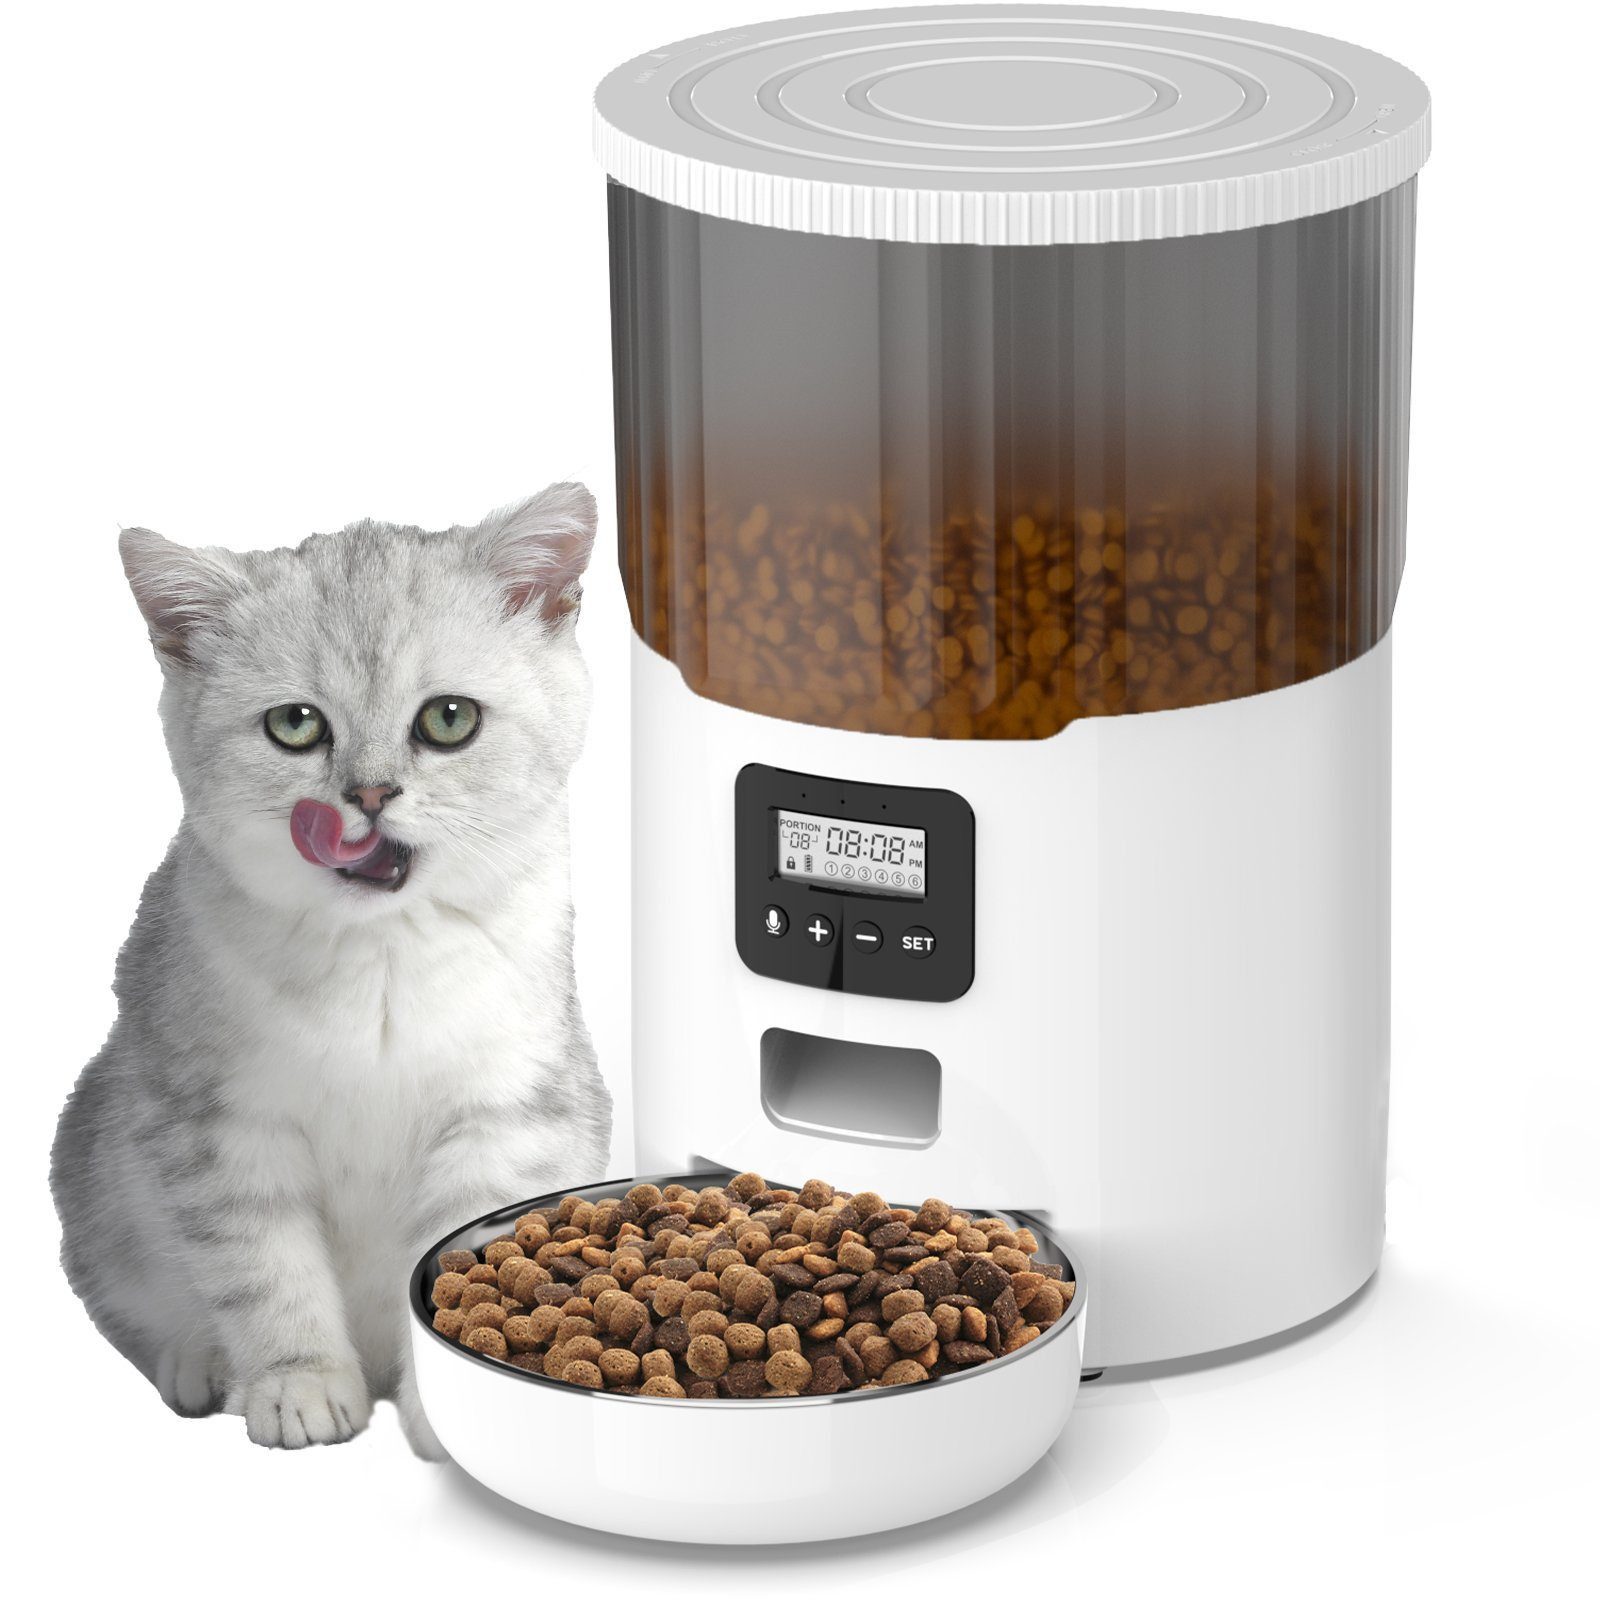 iceagle Futterautomat 4L Futterautomat für Hunde und Katzen, Automatischer Futterspender, LCD, 6 Mahlzeiten/Tag